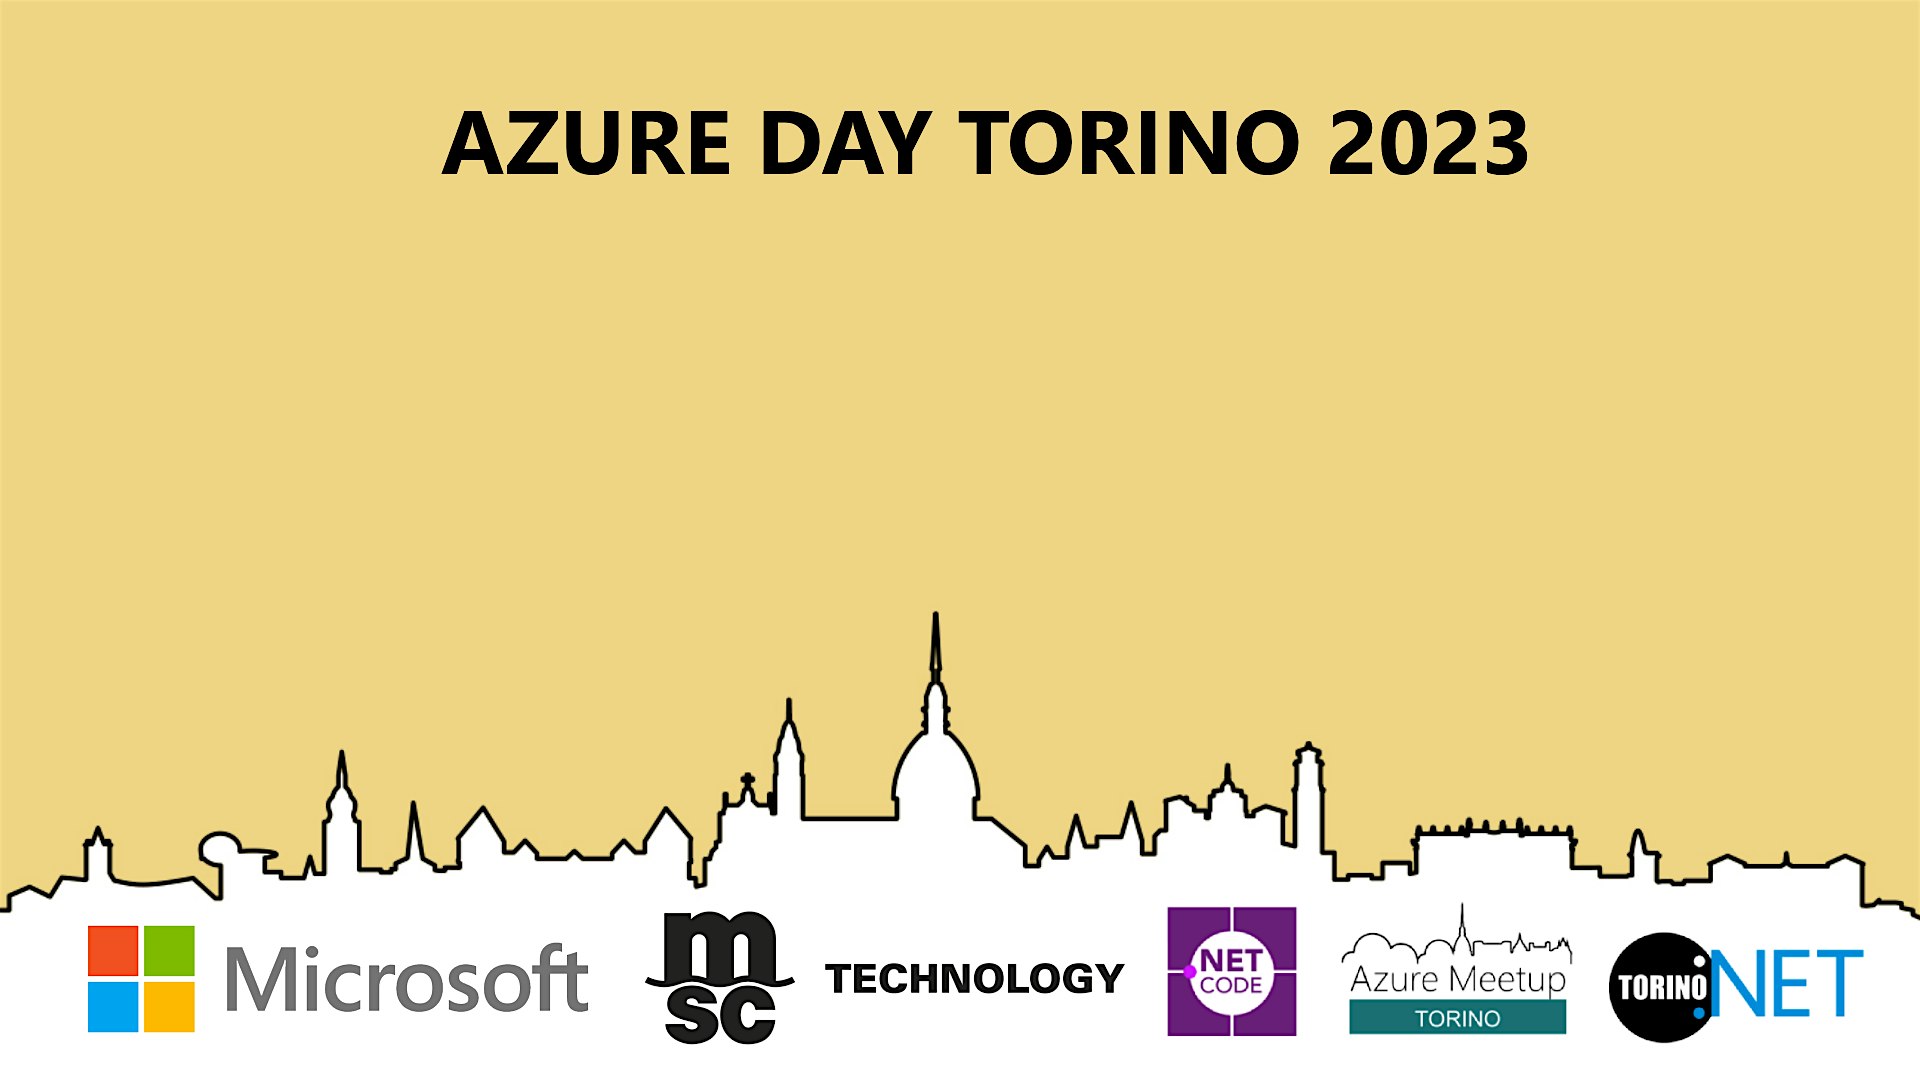 Azure Day Torino 2023